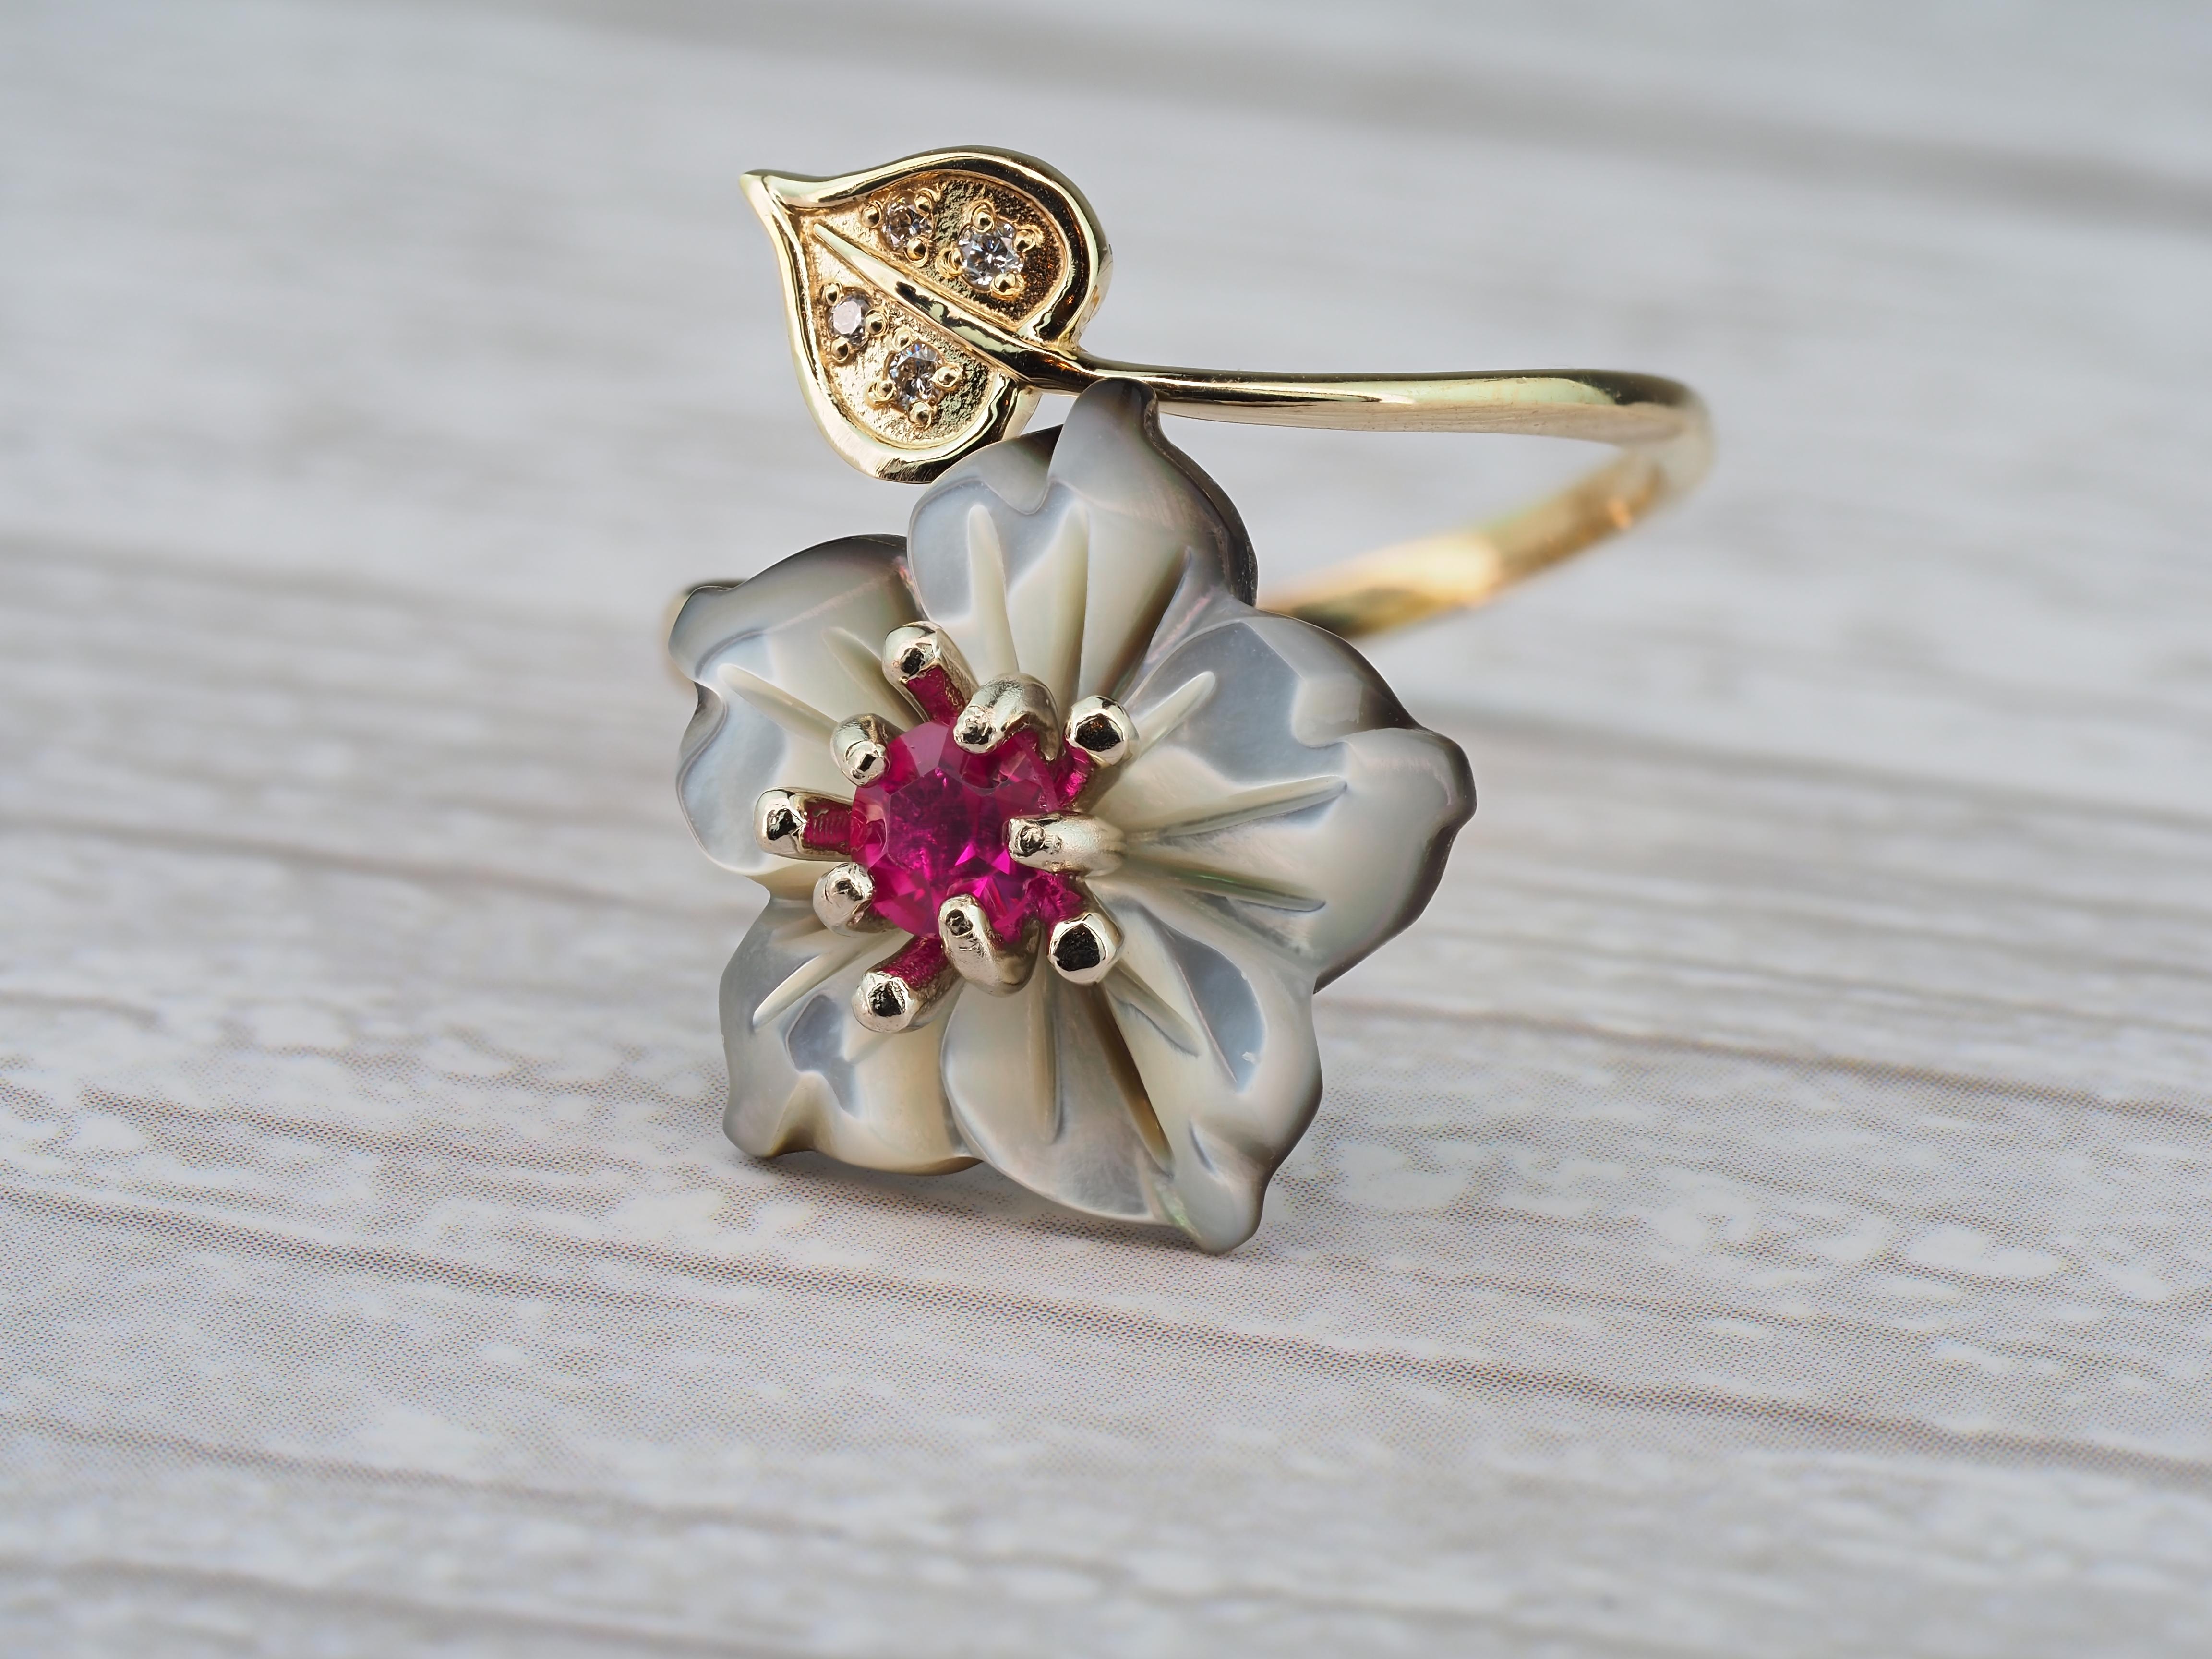 Carved Flower 14k ring with gemstones 1